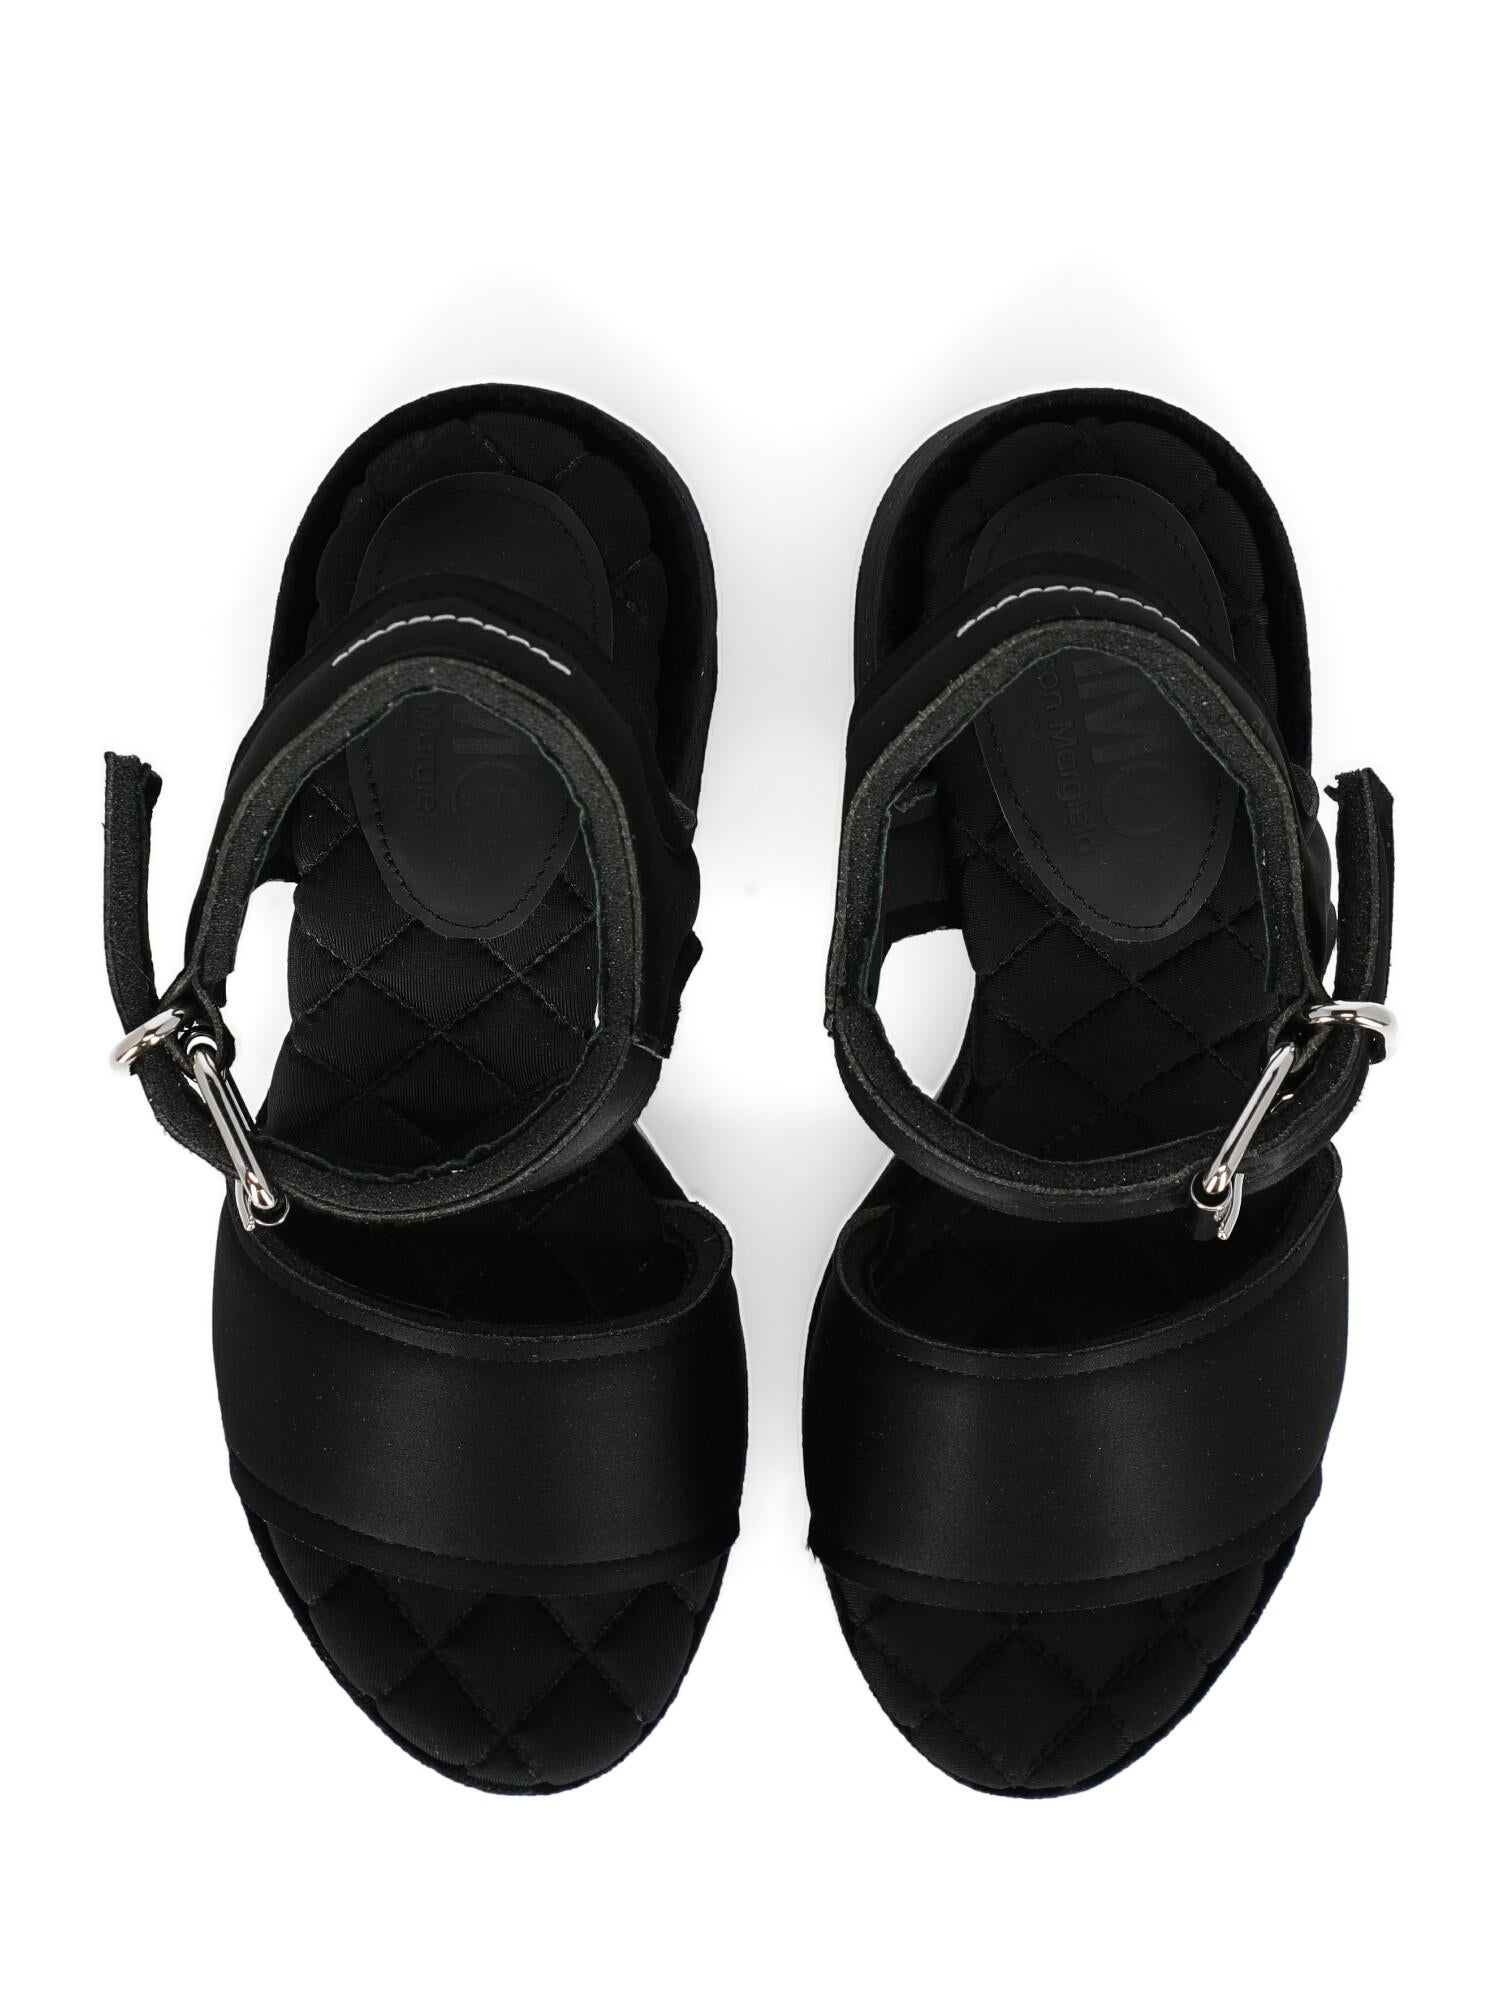 Mm6 Maison Margiela Woman Sandals Black Fabric IT 36 For Sale 2